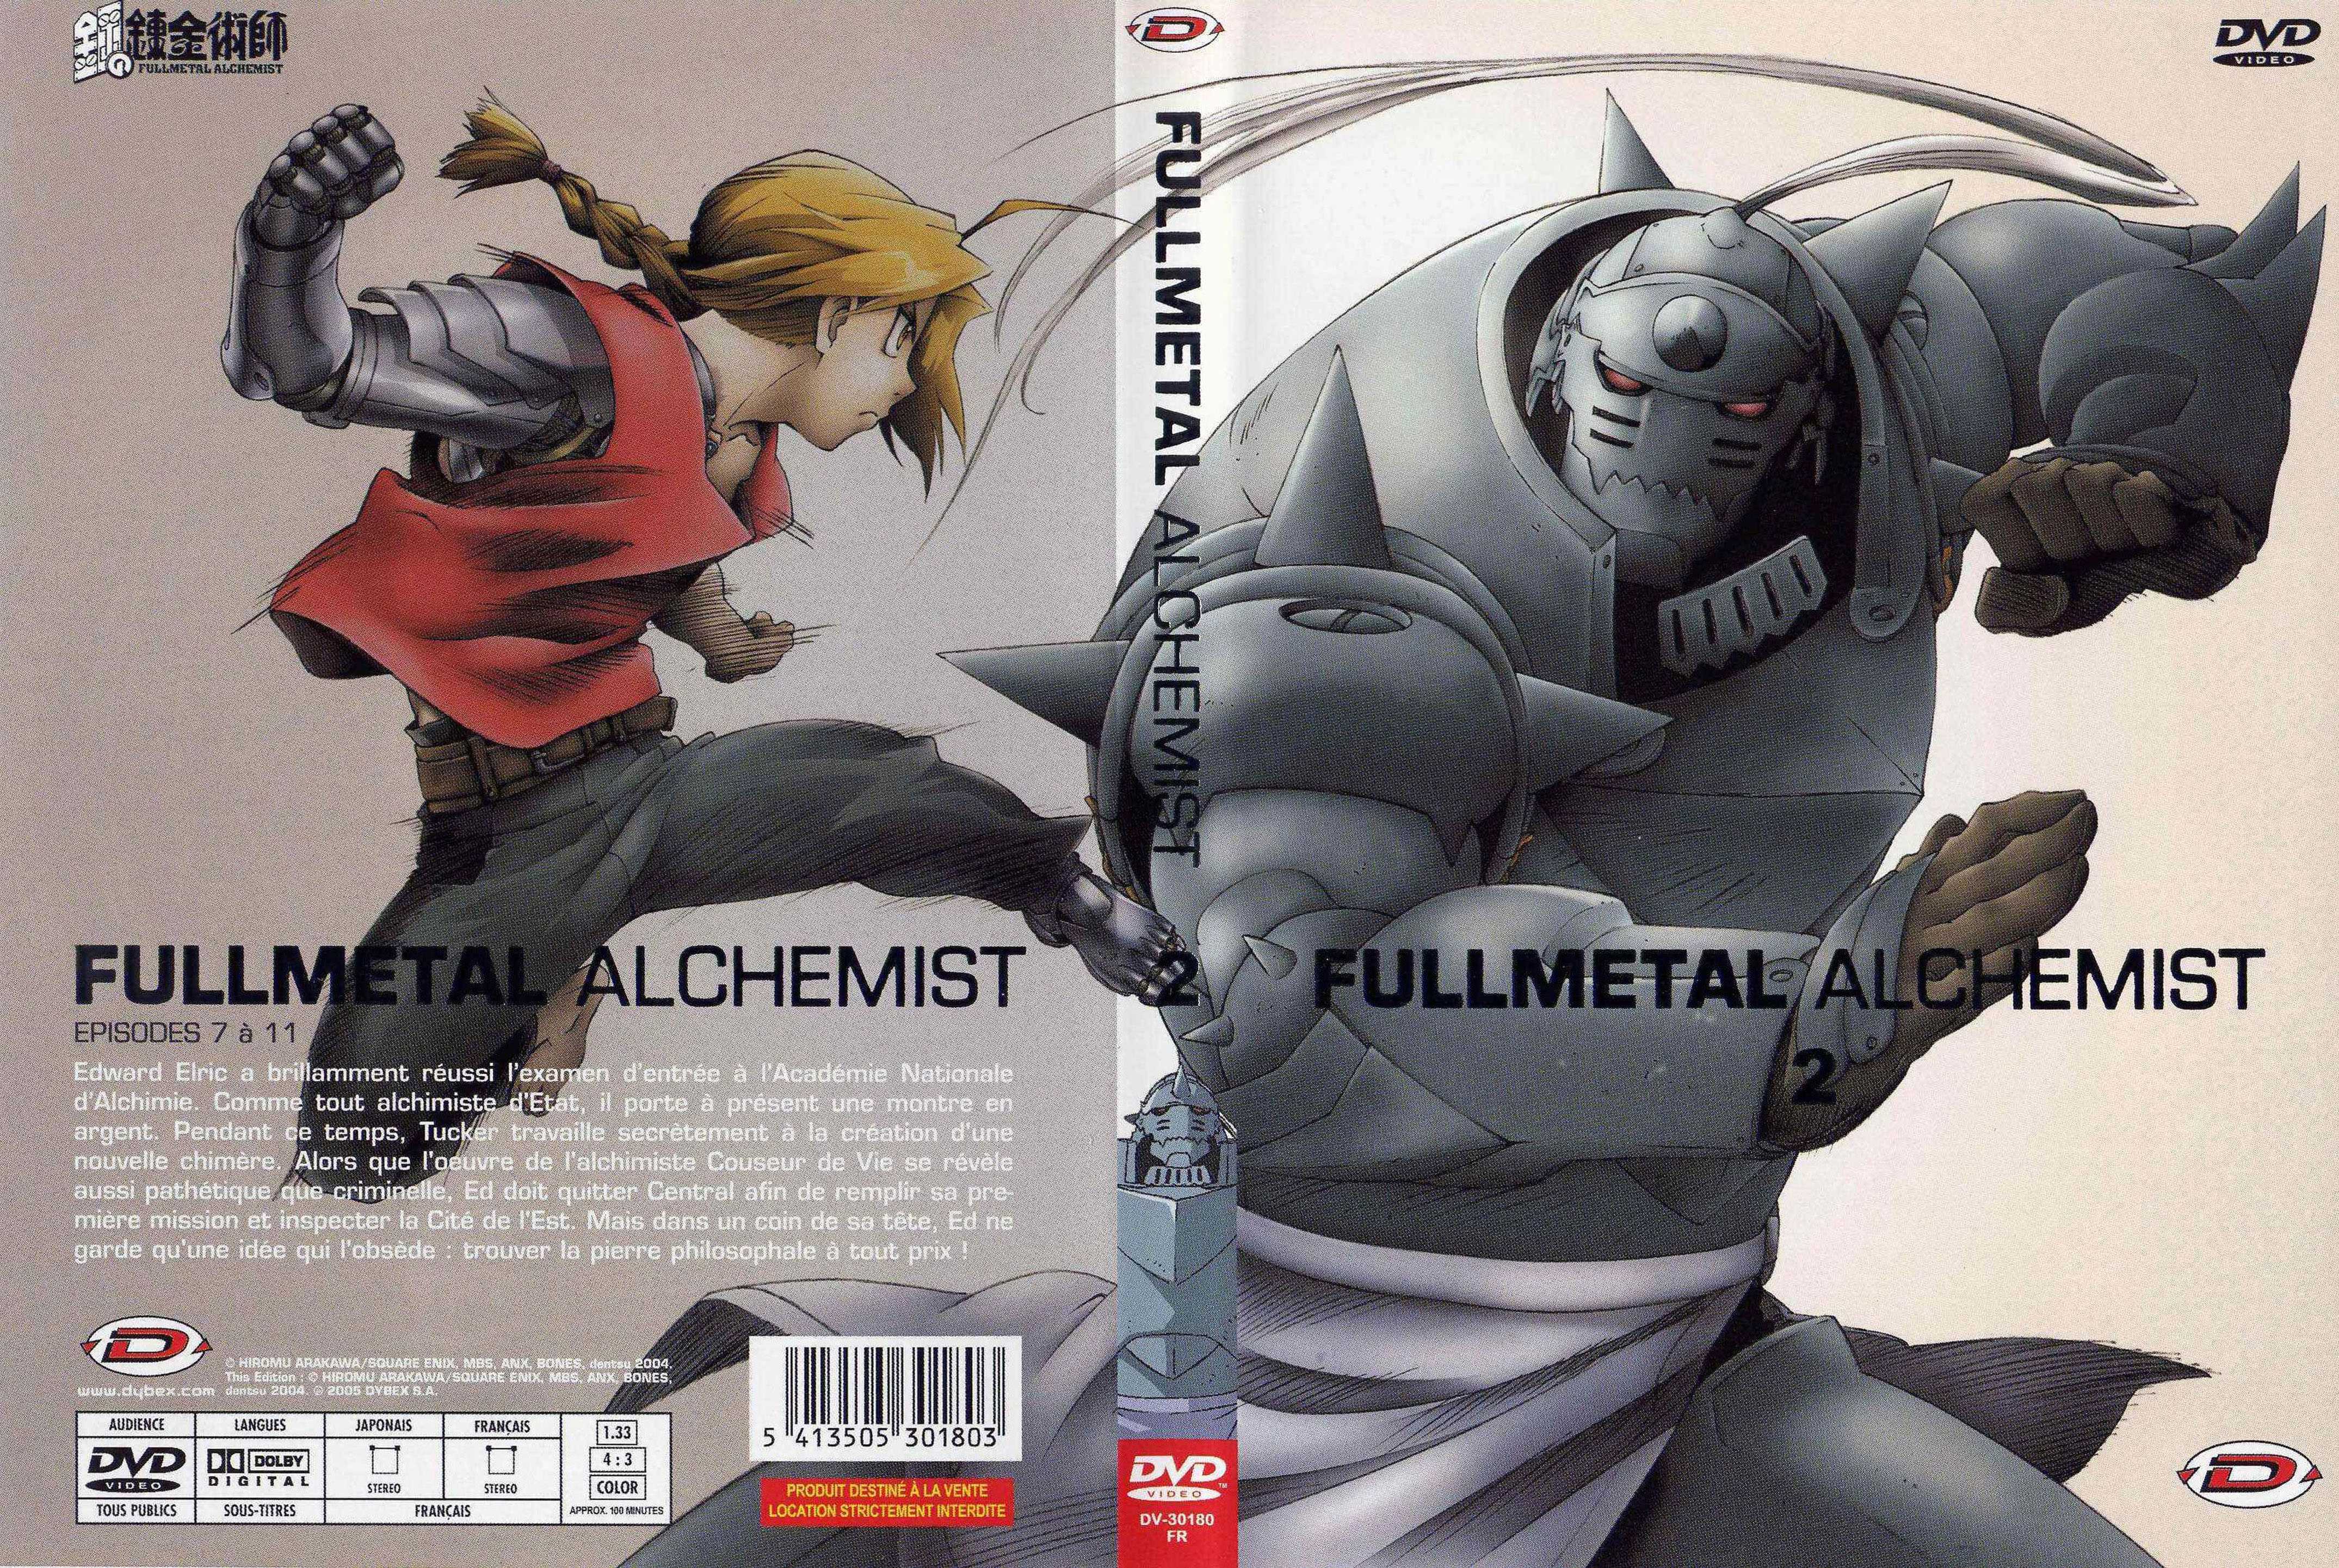 Jaquette DVD Fullmetal alchemist vol 2